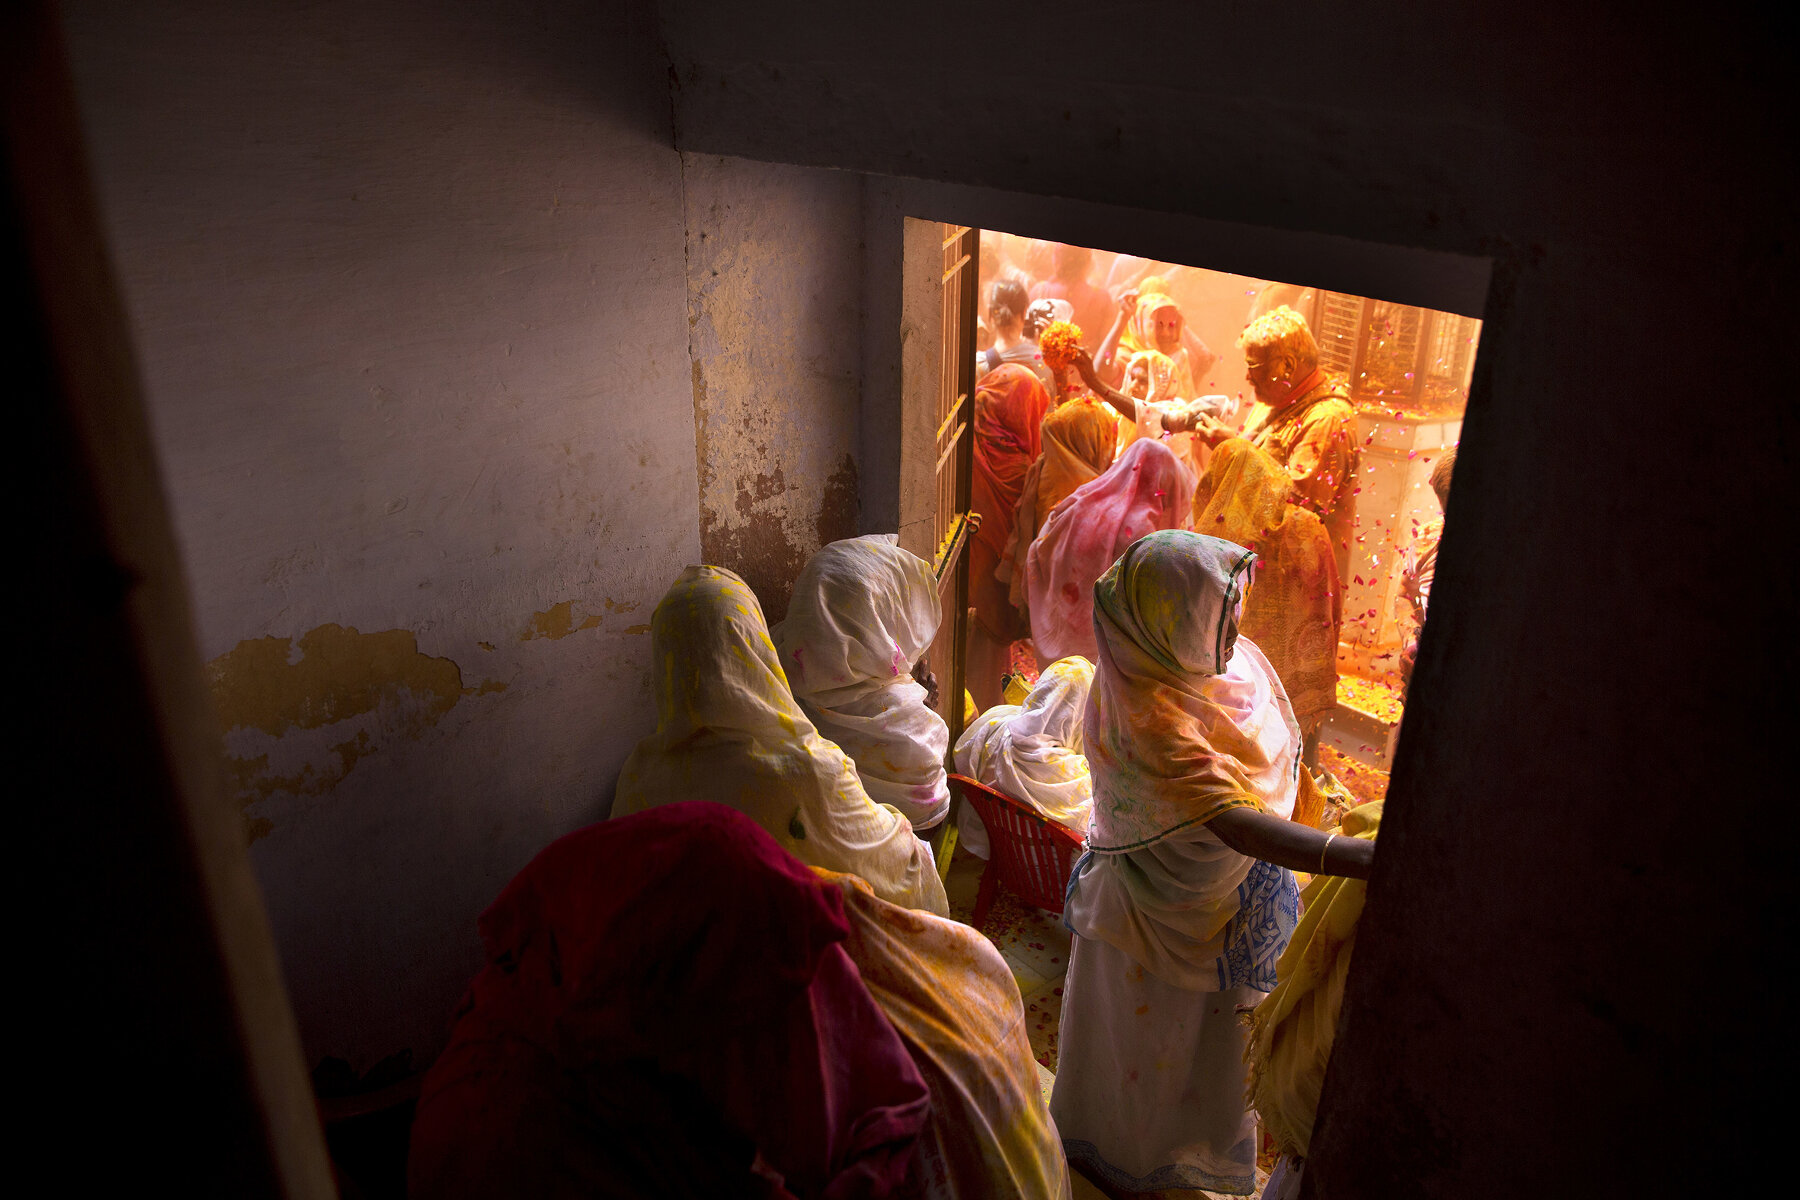 <p>Индийские вдовы, которым когда-то запретили участвовать в фестивале, бросают лепестки цветов и цветной порошок во время религиозного праздника прихода весны. По традиции некоторых областей Индии&nbsp;вдовы должны провести всю свою жизнь в одиночестве и трауре &mdash; отказаться от земных радостей, дни проводить только в молитвах. Считают, что они приносят несчастье.</p>